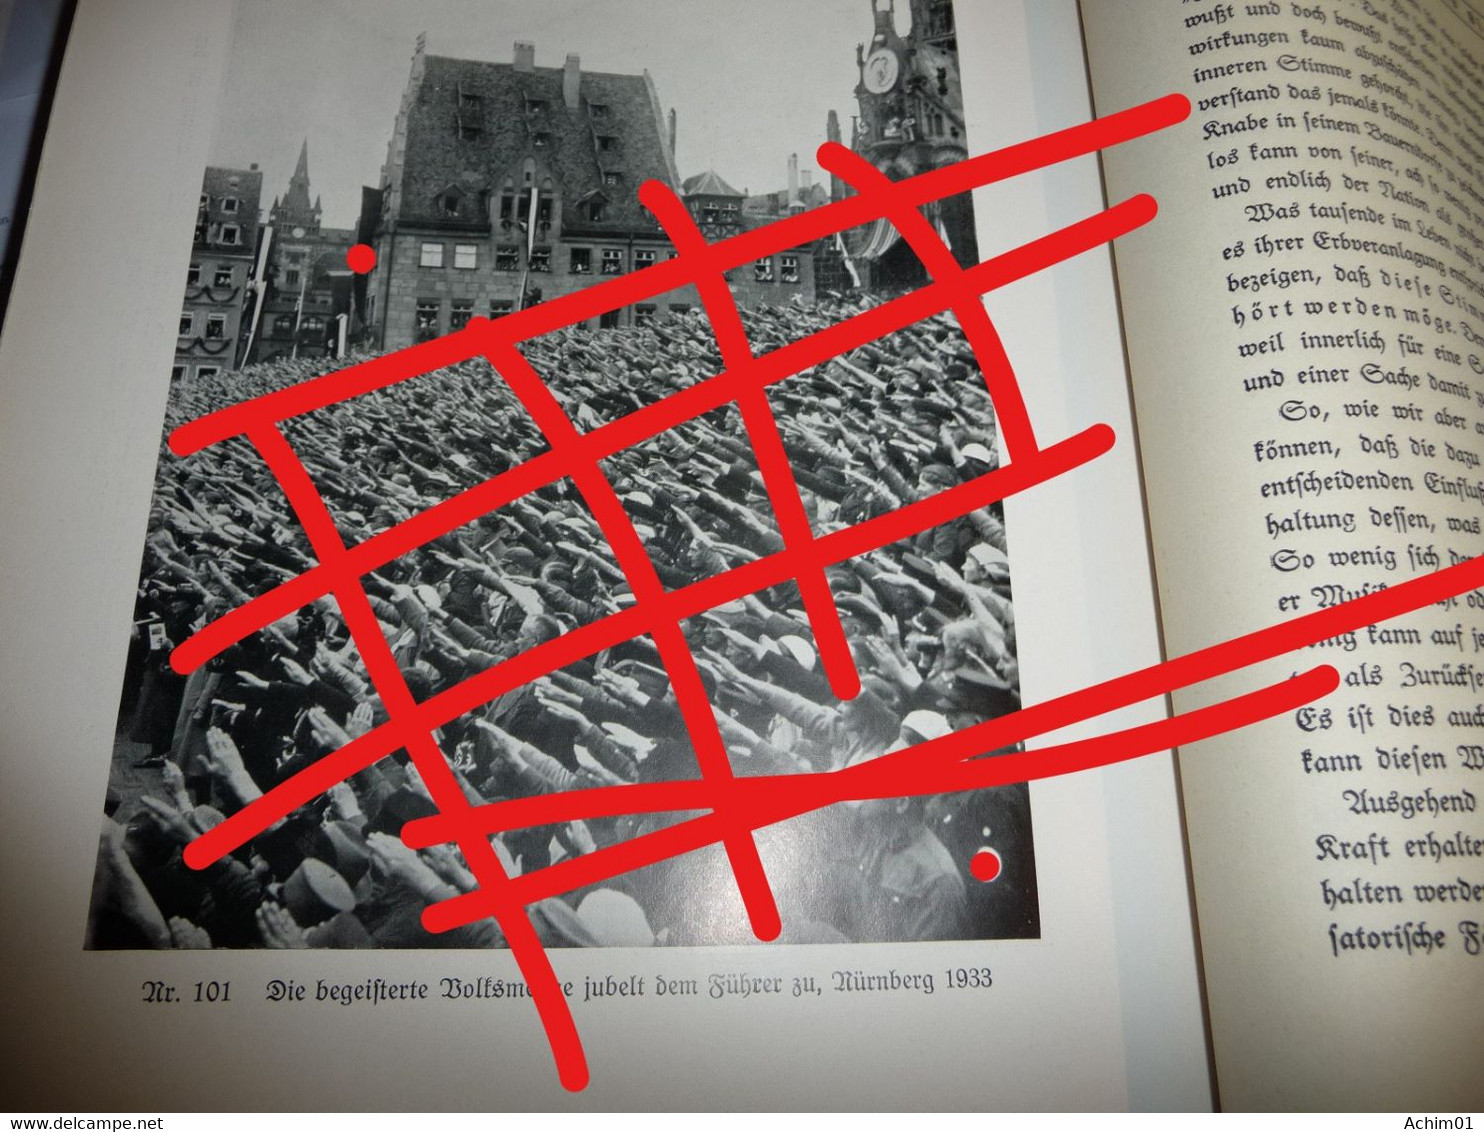 *Das Ehrenbuch des Führers*Heinz Haake (Reichsinspektor der NSDAP)*ALLE Buchmängel auf den Bildern zu sehen*